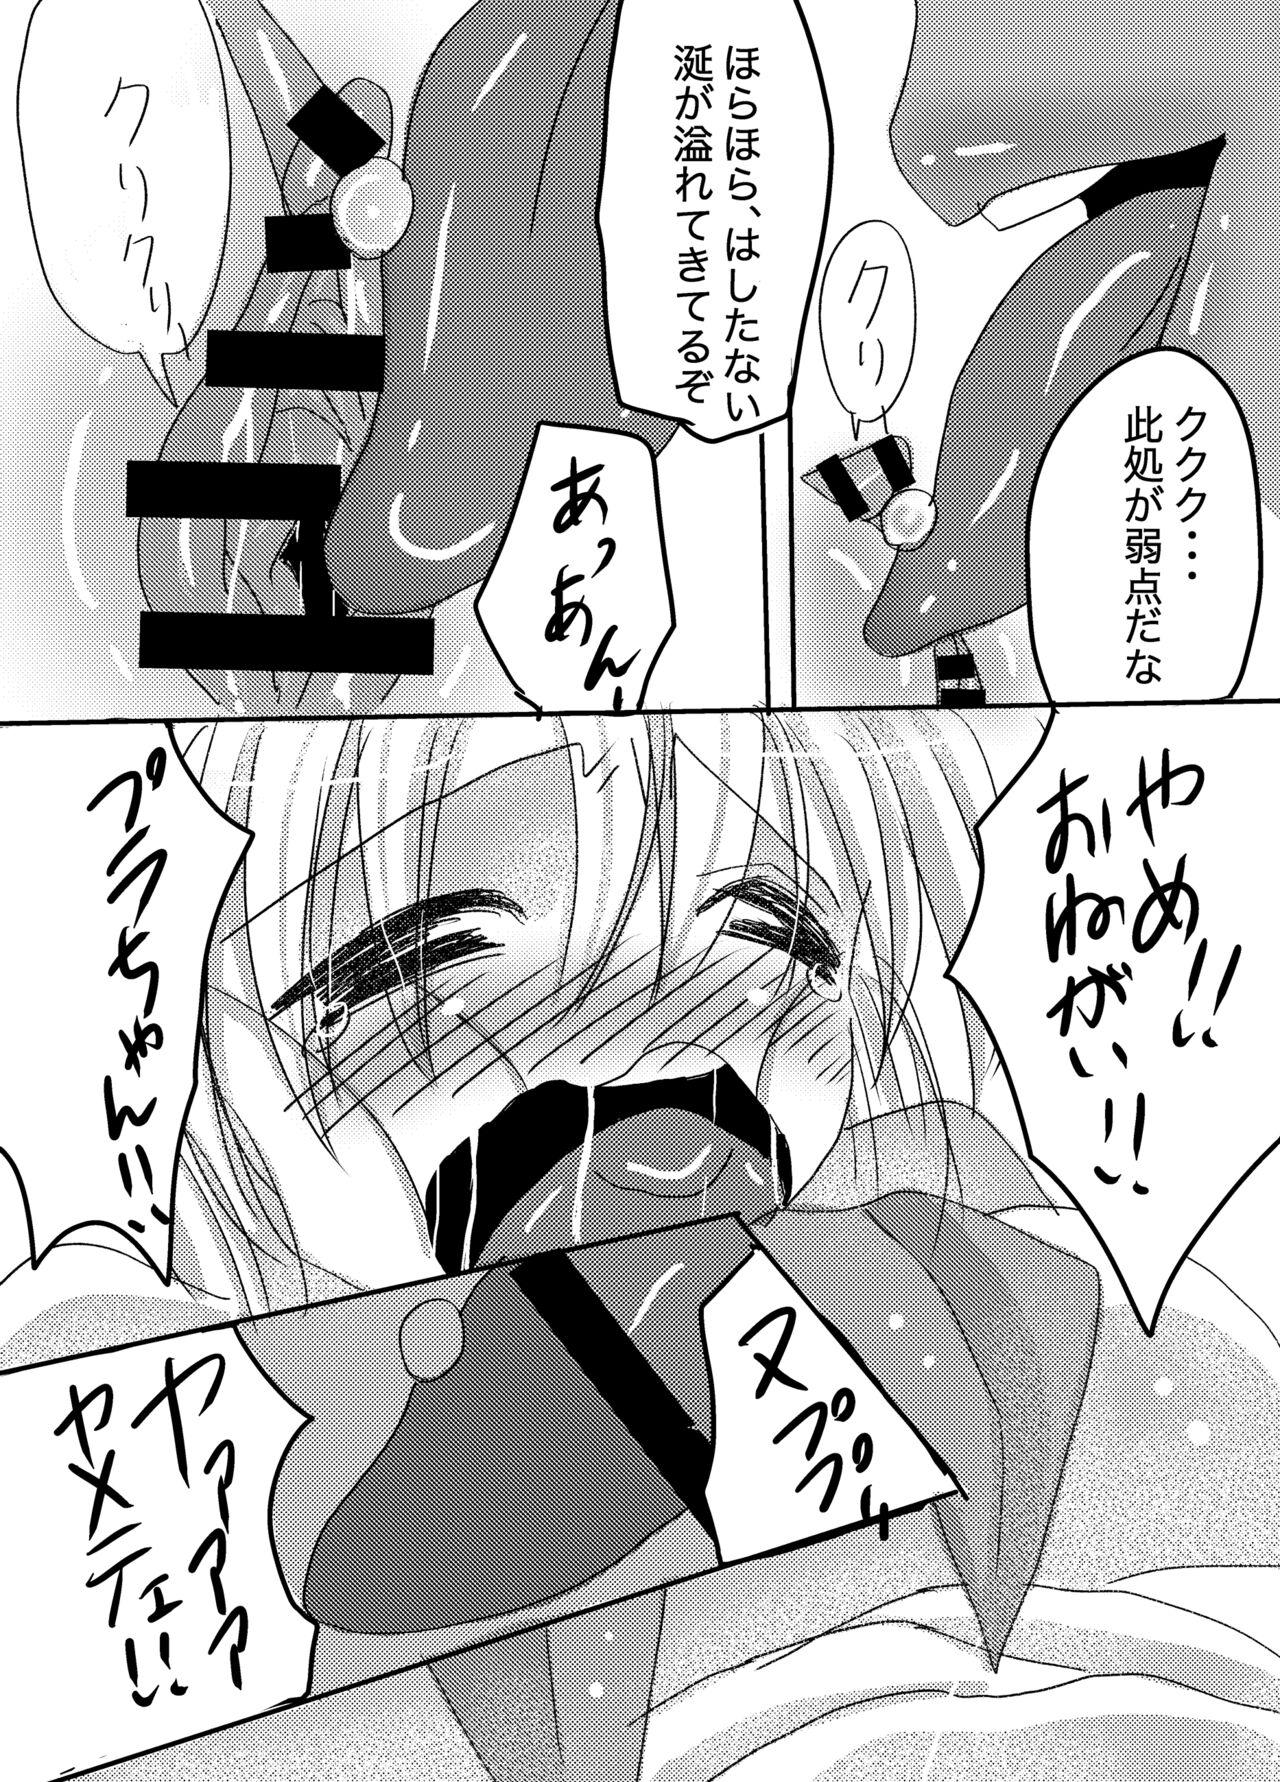 Hole Galtinum ni Omanko Peropero Sarechau Shiro-chan no Manga - Bomber girl Putita - Page 5